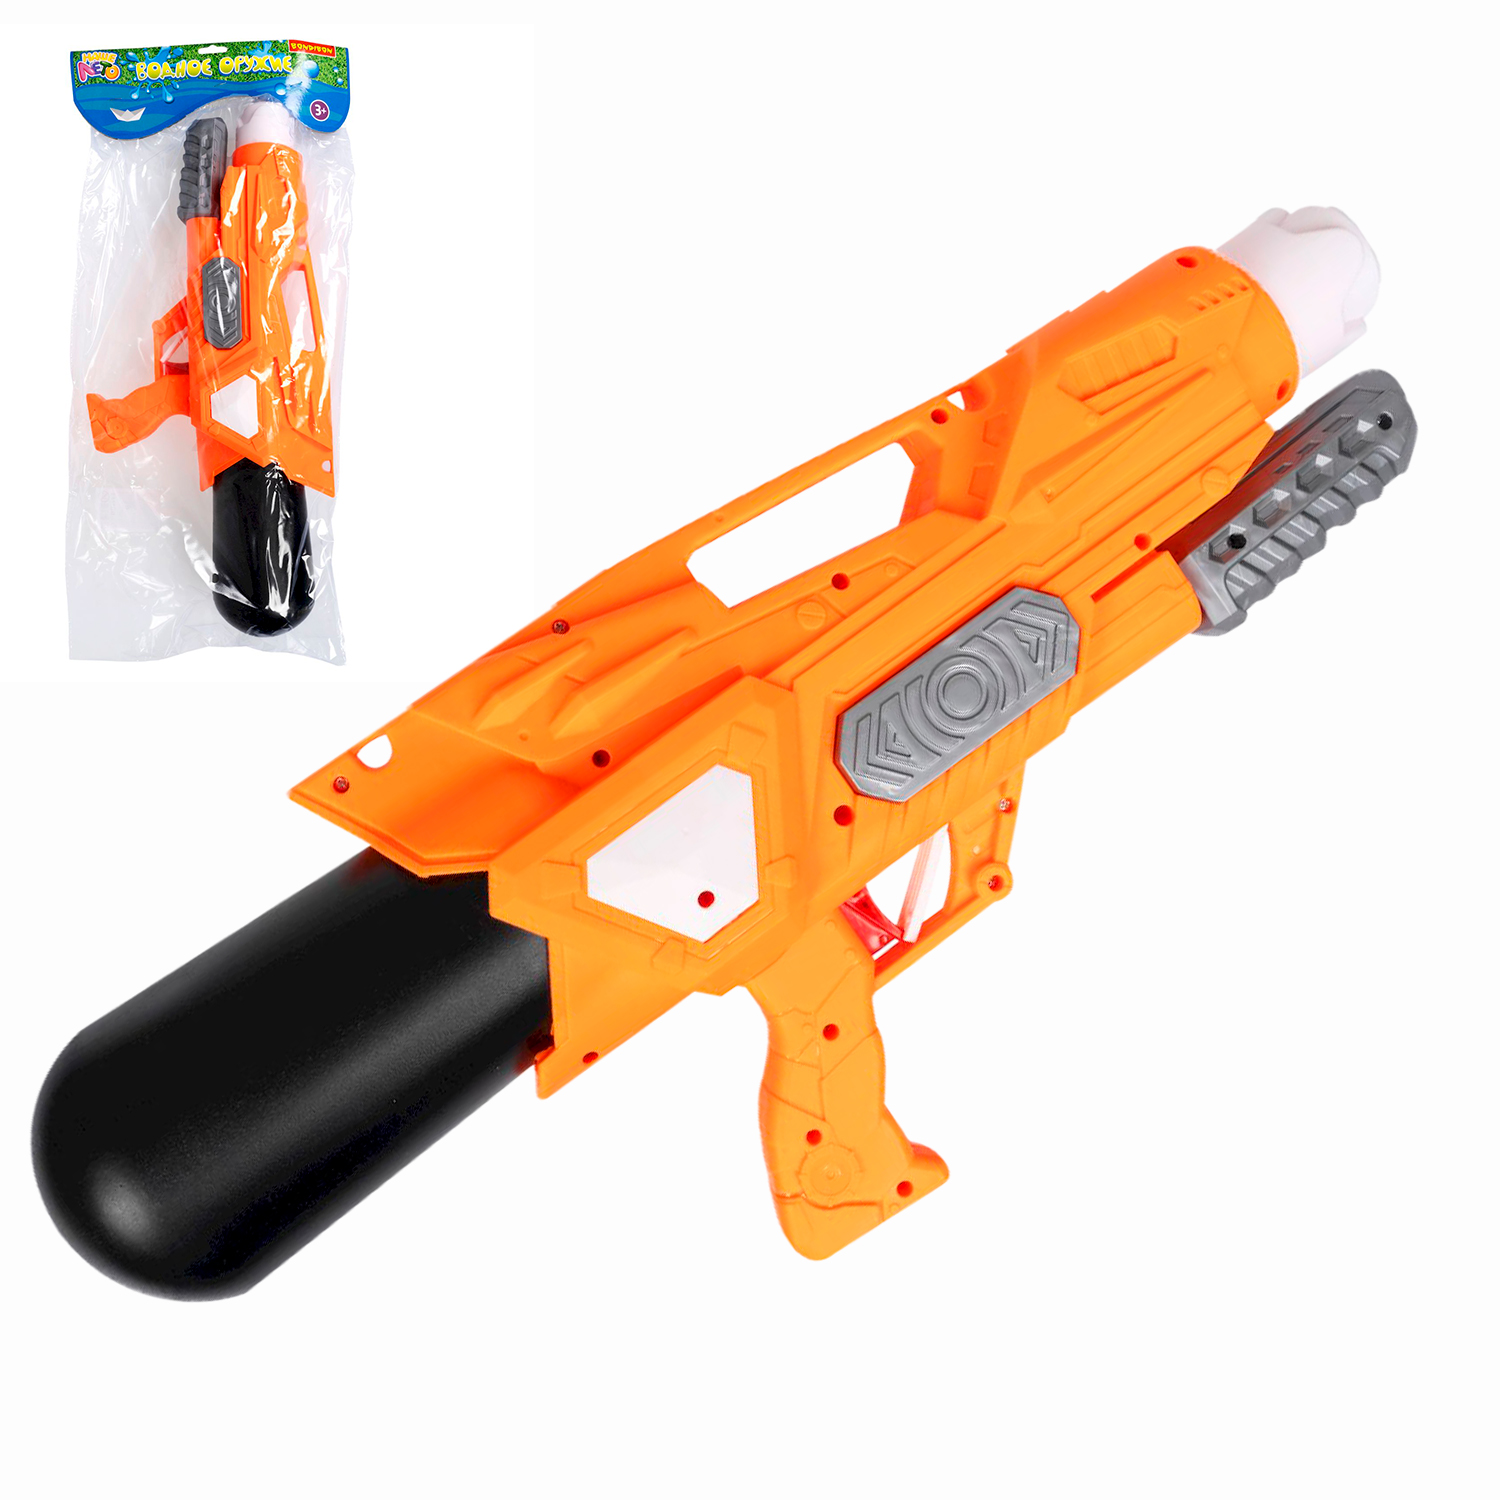 Водный пистолет игрушечный с помпой Bondibon Наше Лето, оранжевый, ВВ5801 водный пистолет игрушечный резервуар 1050 мл водный бой игры с водой jb0211485